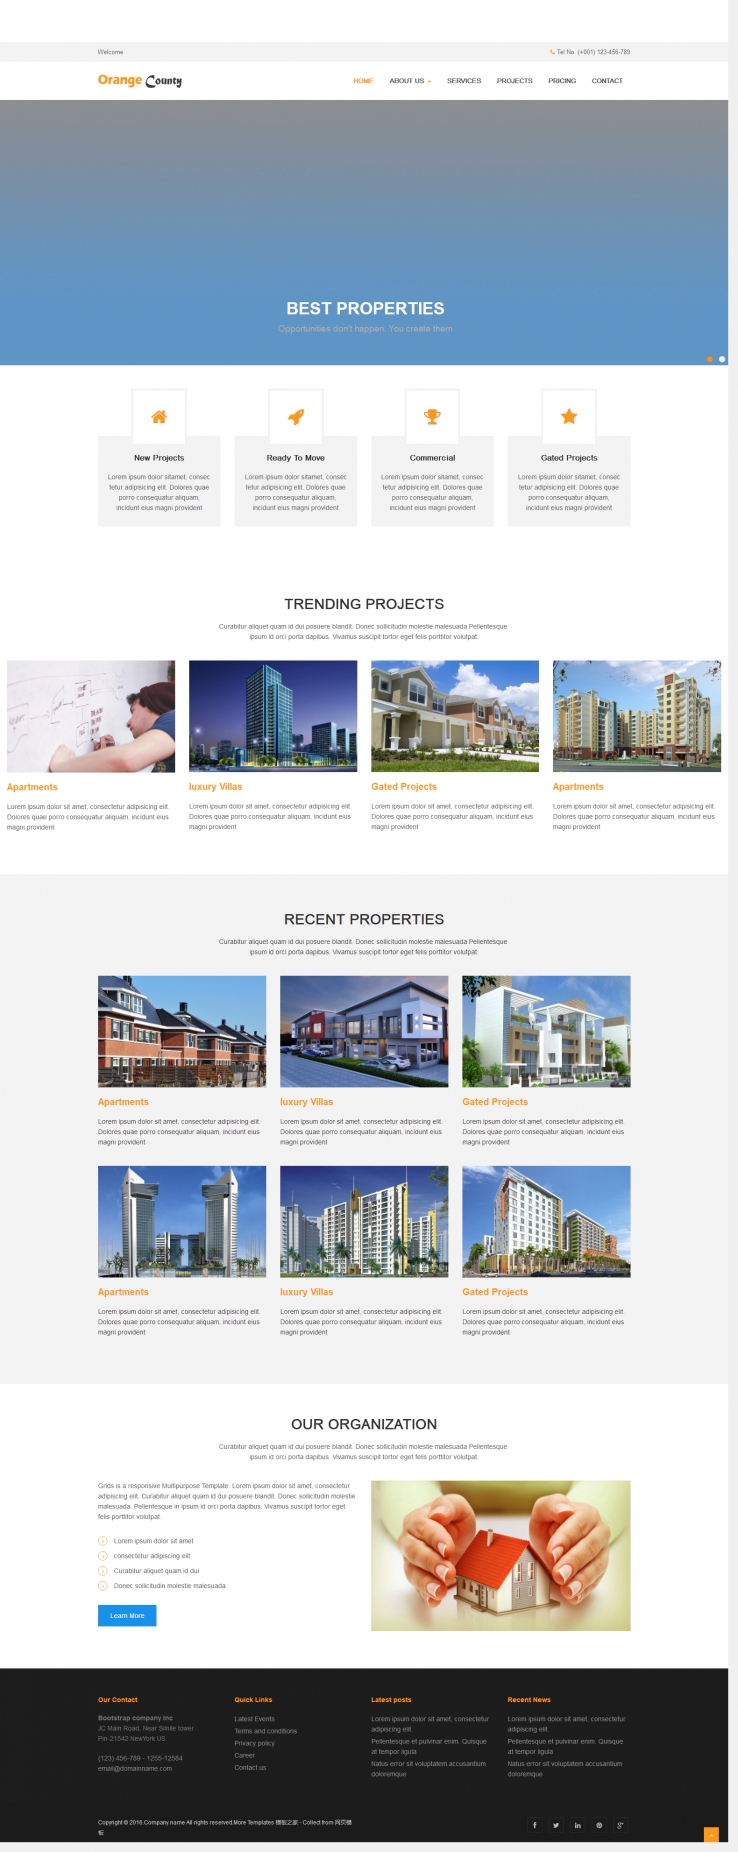 简洁白色风格的城市规划图企业网站模板下载